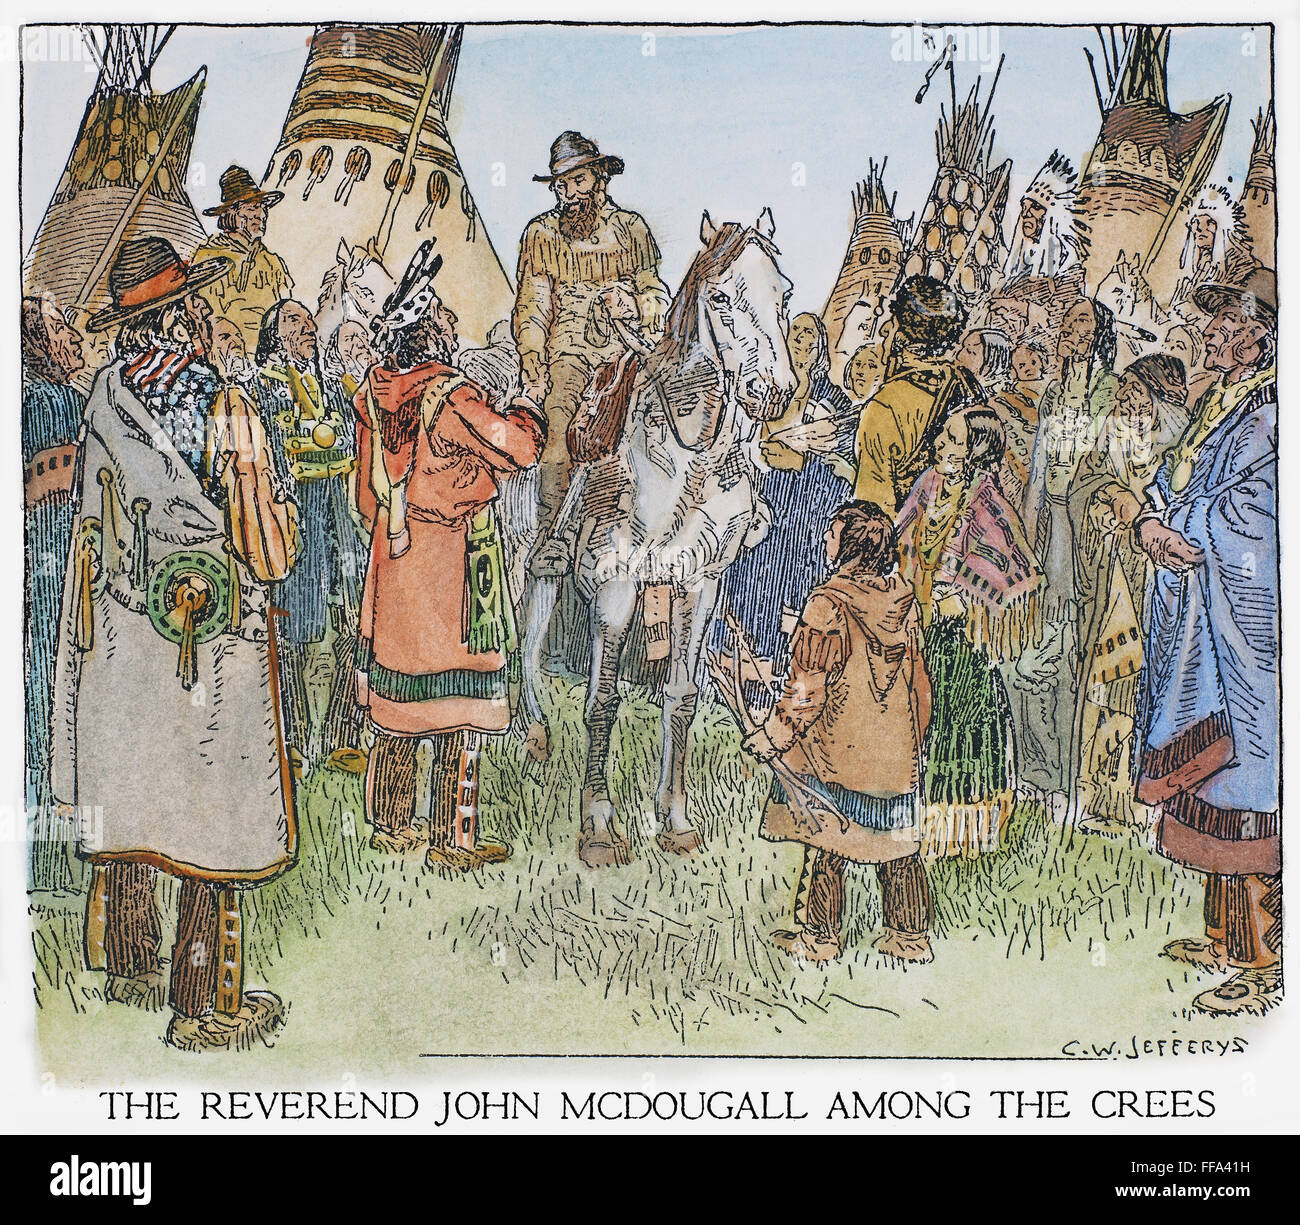 CANADA: Missionario, 1870s. /NMethodist missionario John McDougall tra Cree nativi americani del Canada occidentale, primi 1870s. Disegno di C.W. Jefferys. Foto Stock